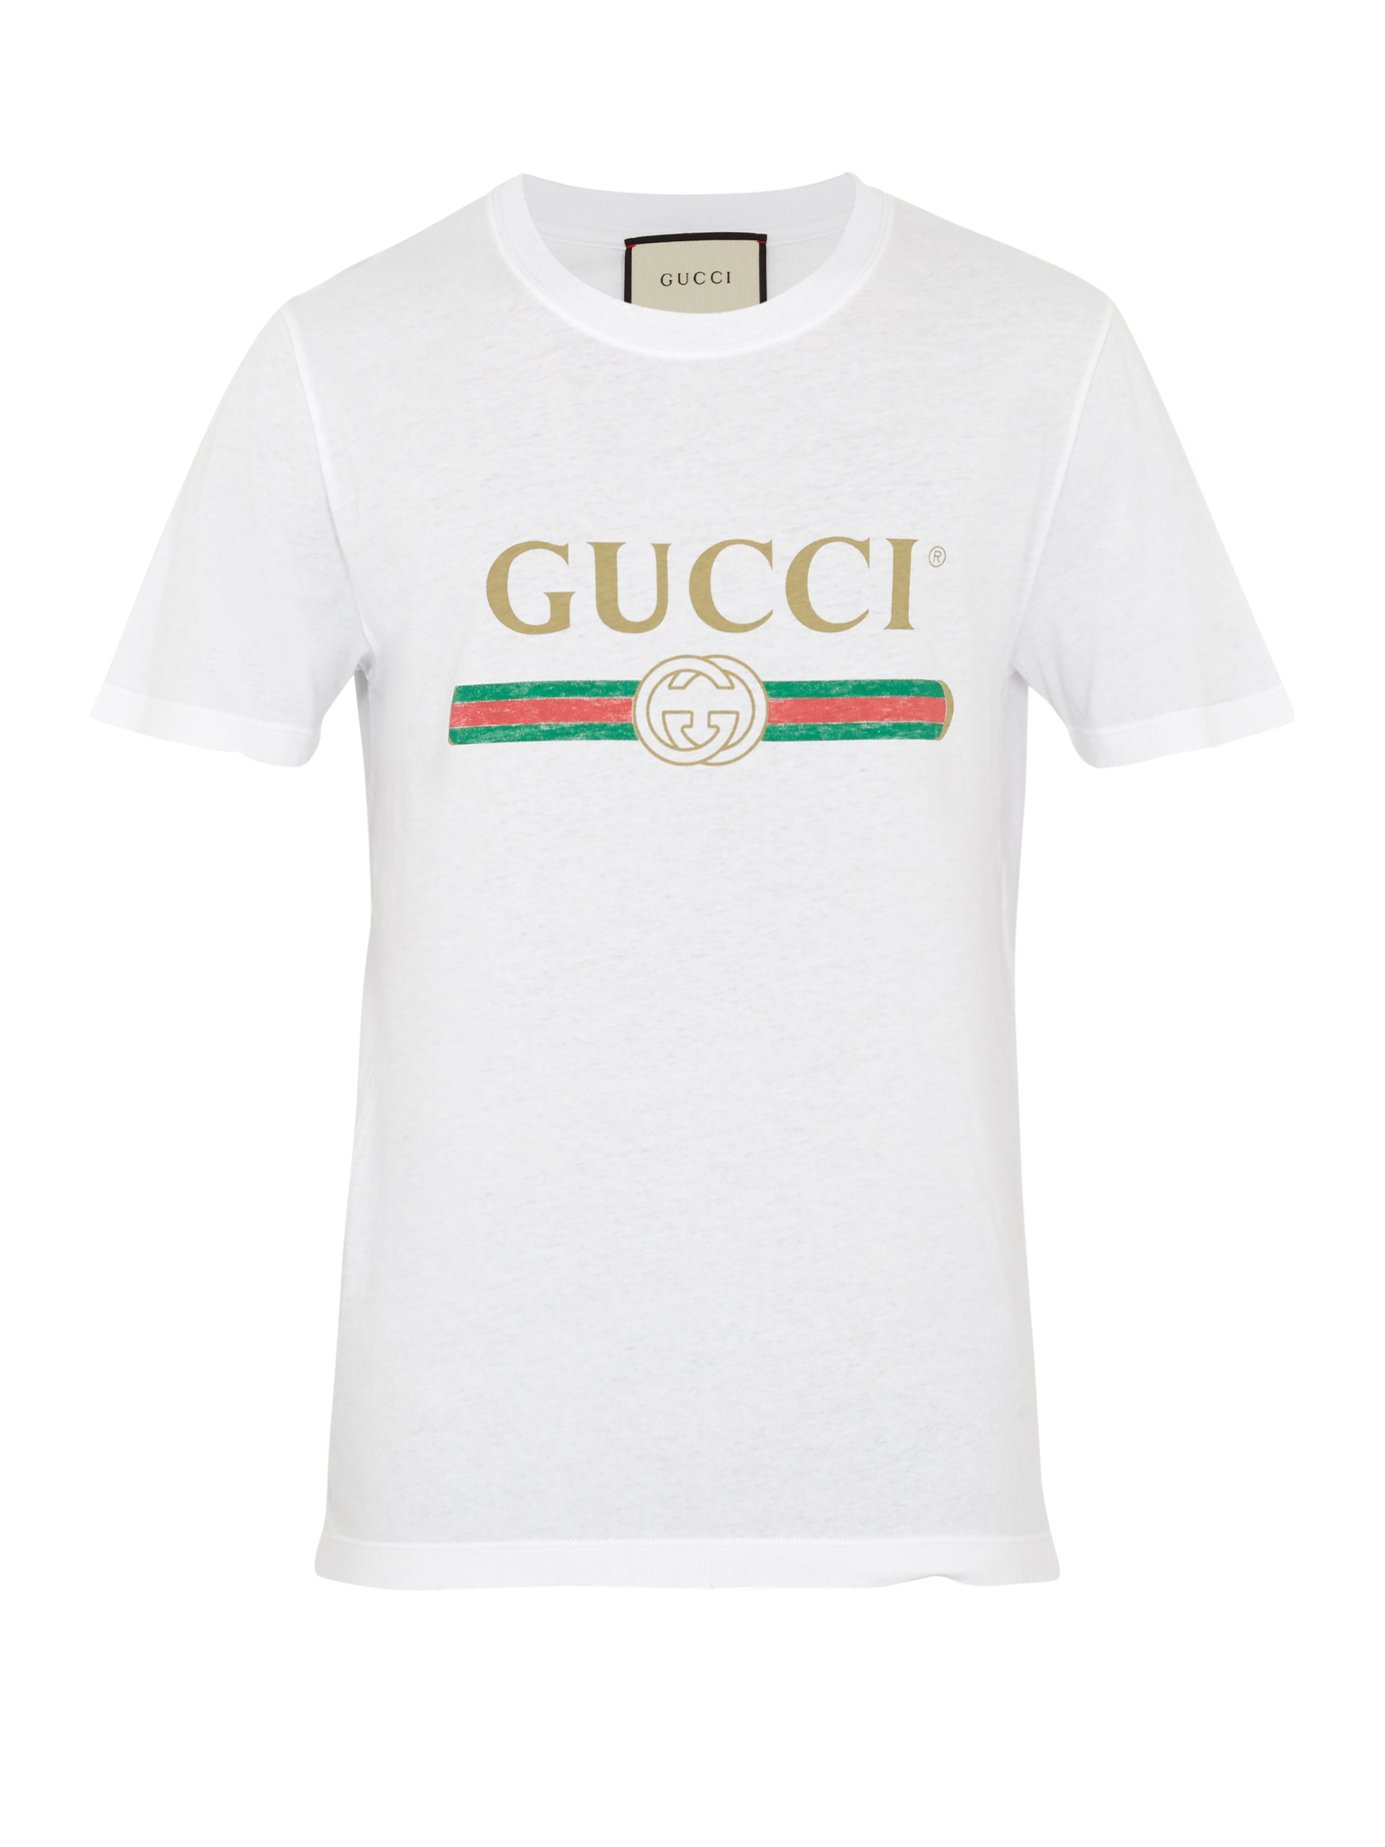 GUCCI Cotton Jersey T-Shirt W/ Imitation Print, White | ModeSens